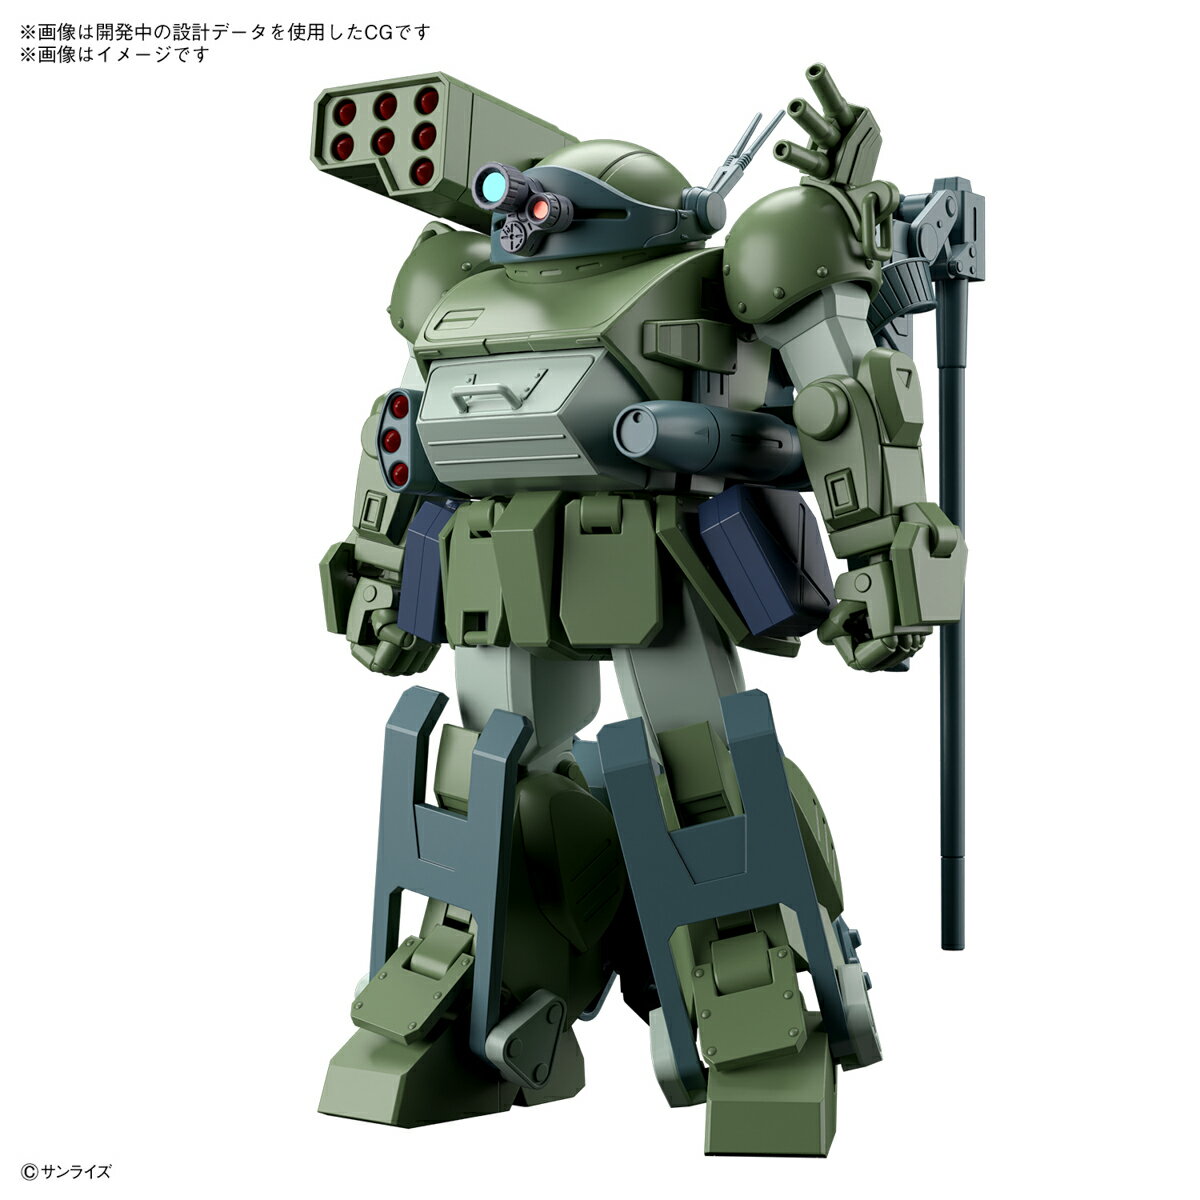 【中古】MG 1/100 RX-78-2 ガンダム クリスタルバージョン (機動戦士ガンダム) bme6fzu